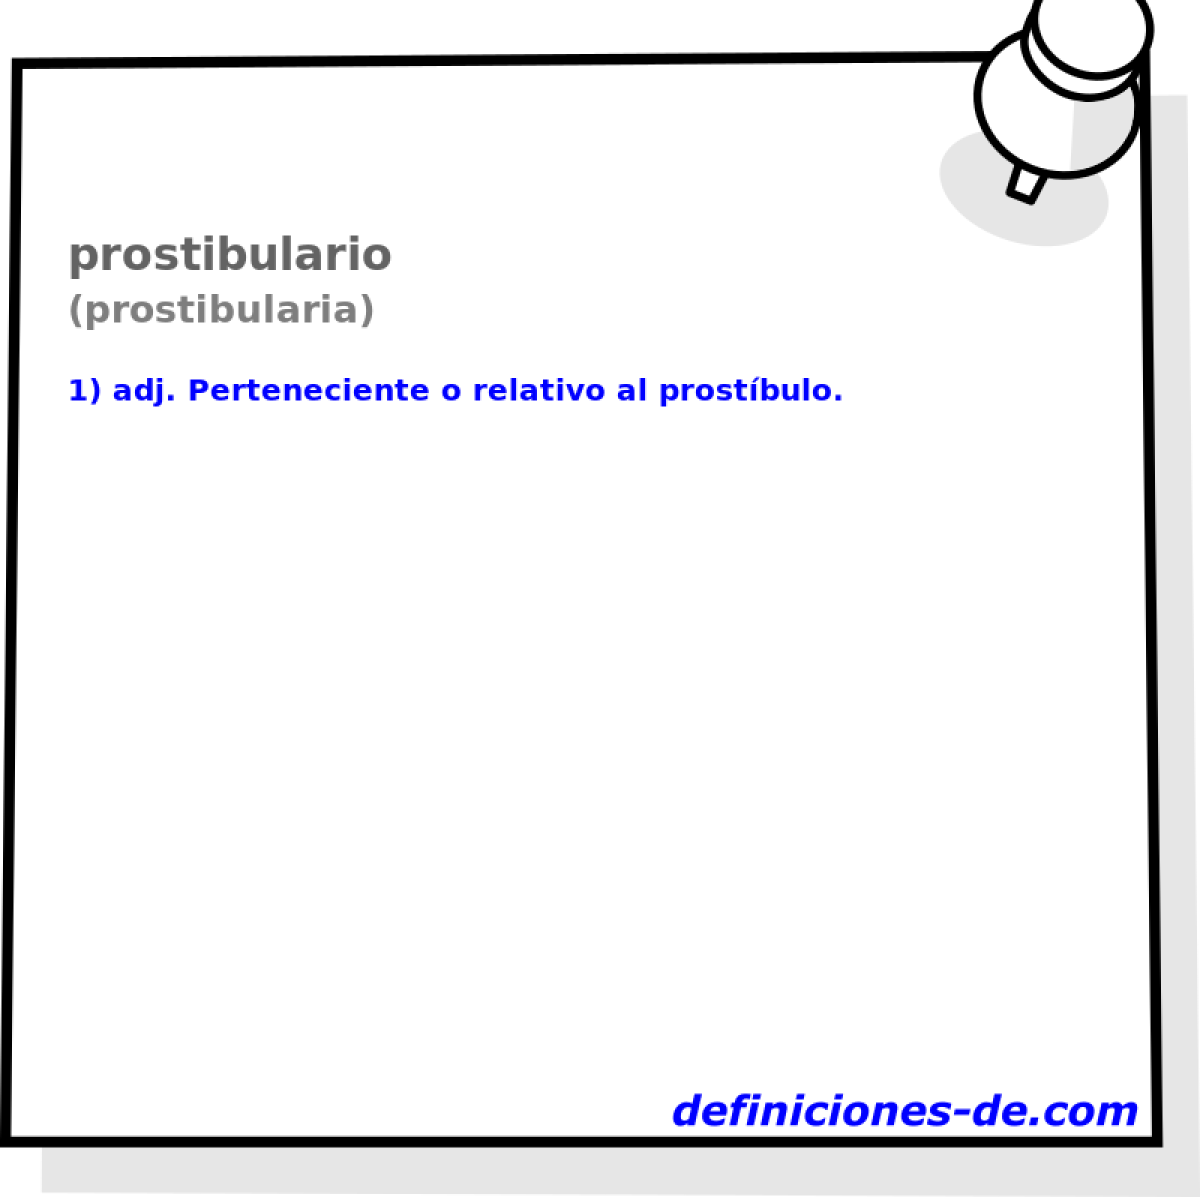 prostibulario (prostibularia)